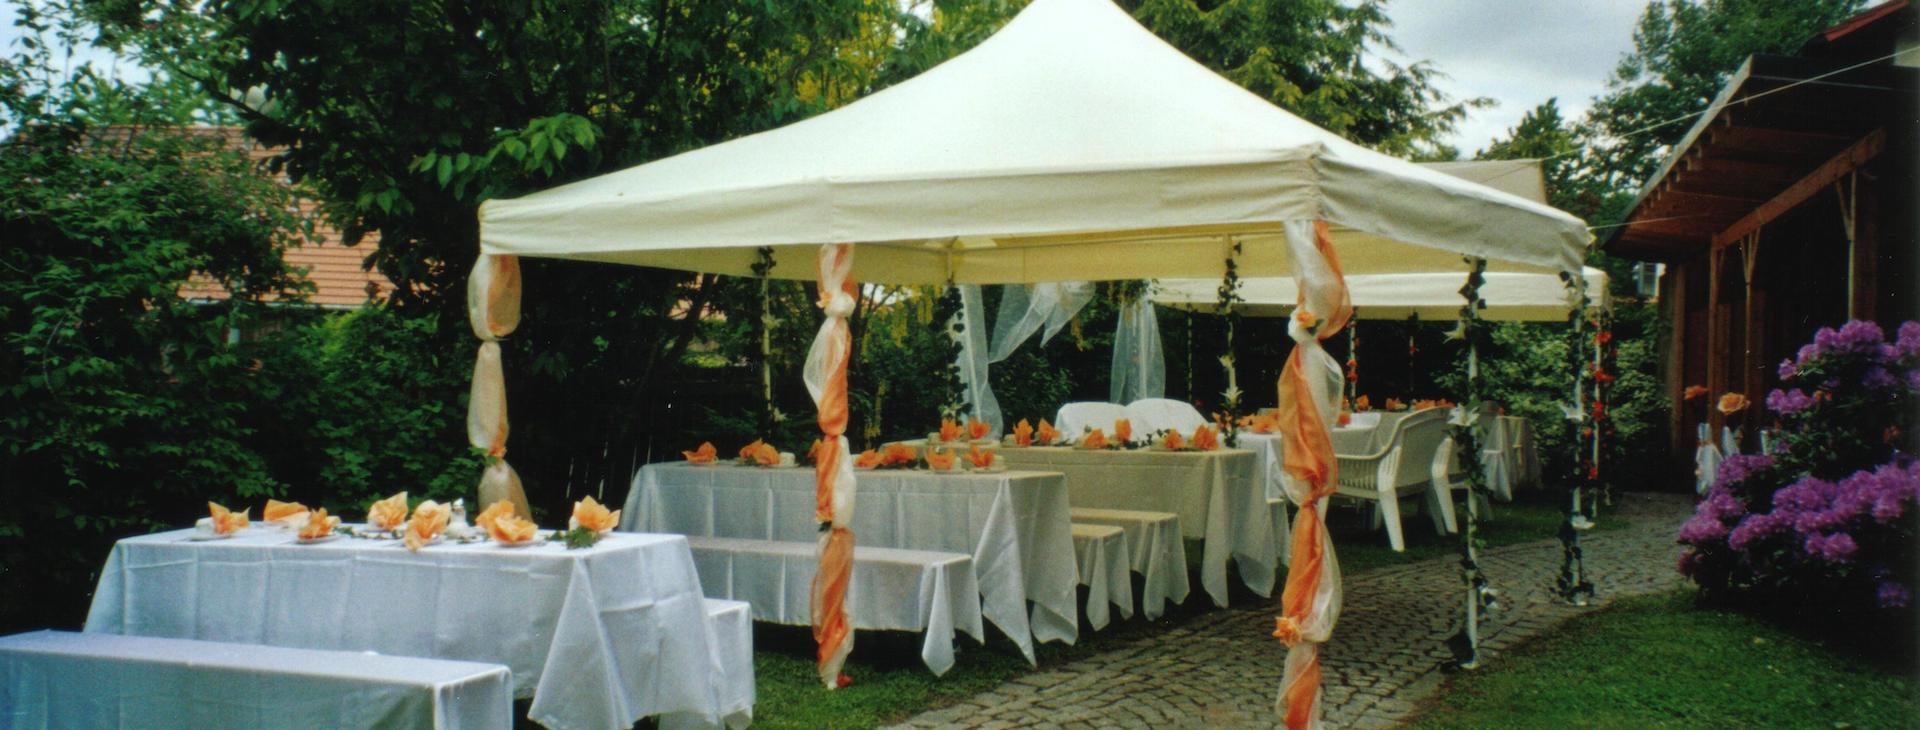 Hotel Wurzer - restaurant banquet